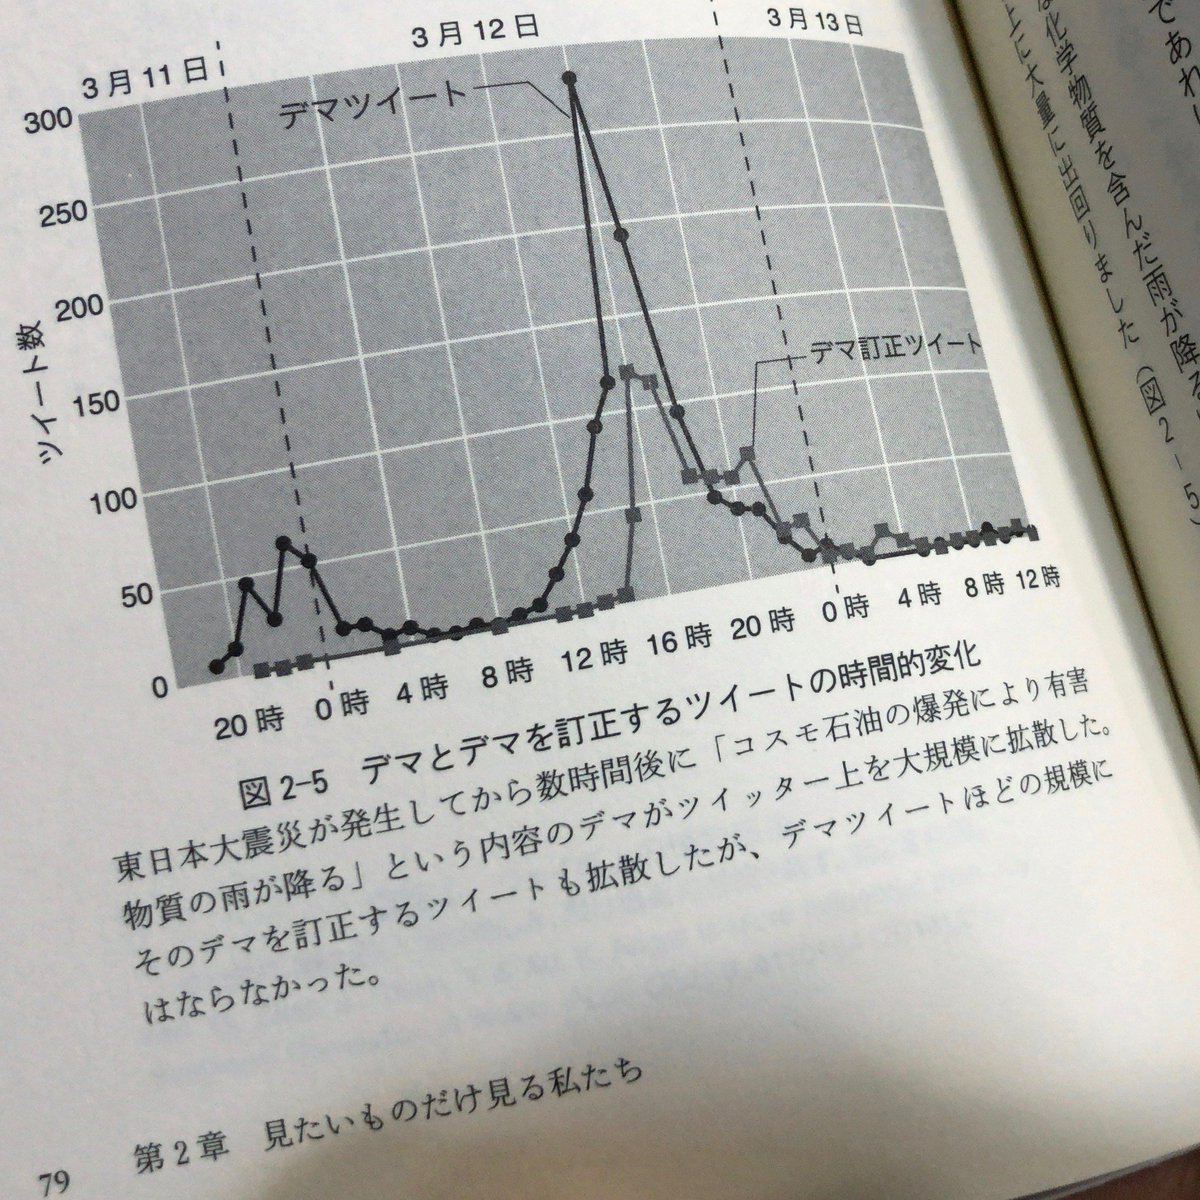 Haruhiko Okumura この本 フェイクニュースを科学する にもあったコスモ石油のツイート数の推移 ピークで400件 時くらいしか拾えてない T Co Fl4wonehkg の コスモ石油 グラフはピーク件 時